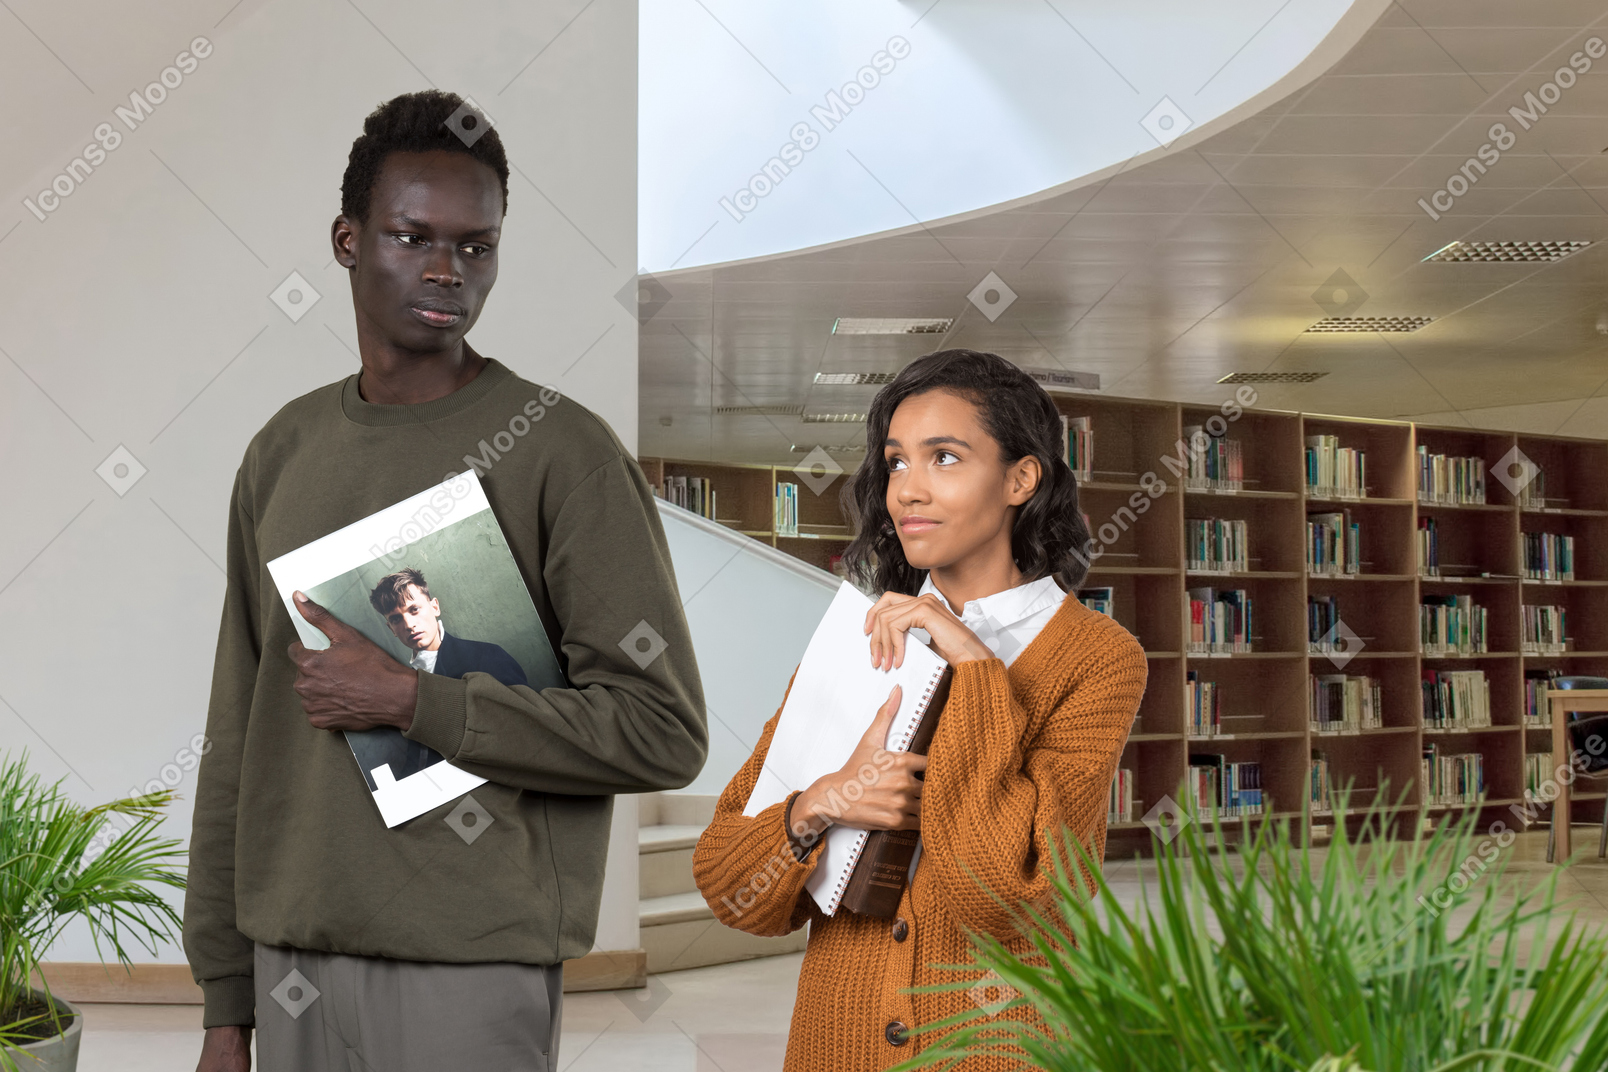 Une femme noire modestement vêtue, tenant des livres dans ses mains, regarde avec amour l'homme noir sérieux de la bibliothèque, qui ne la remarque pas